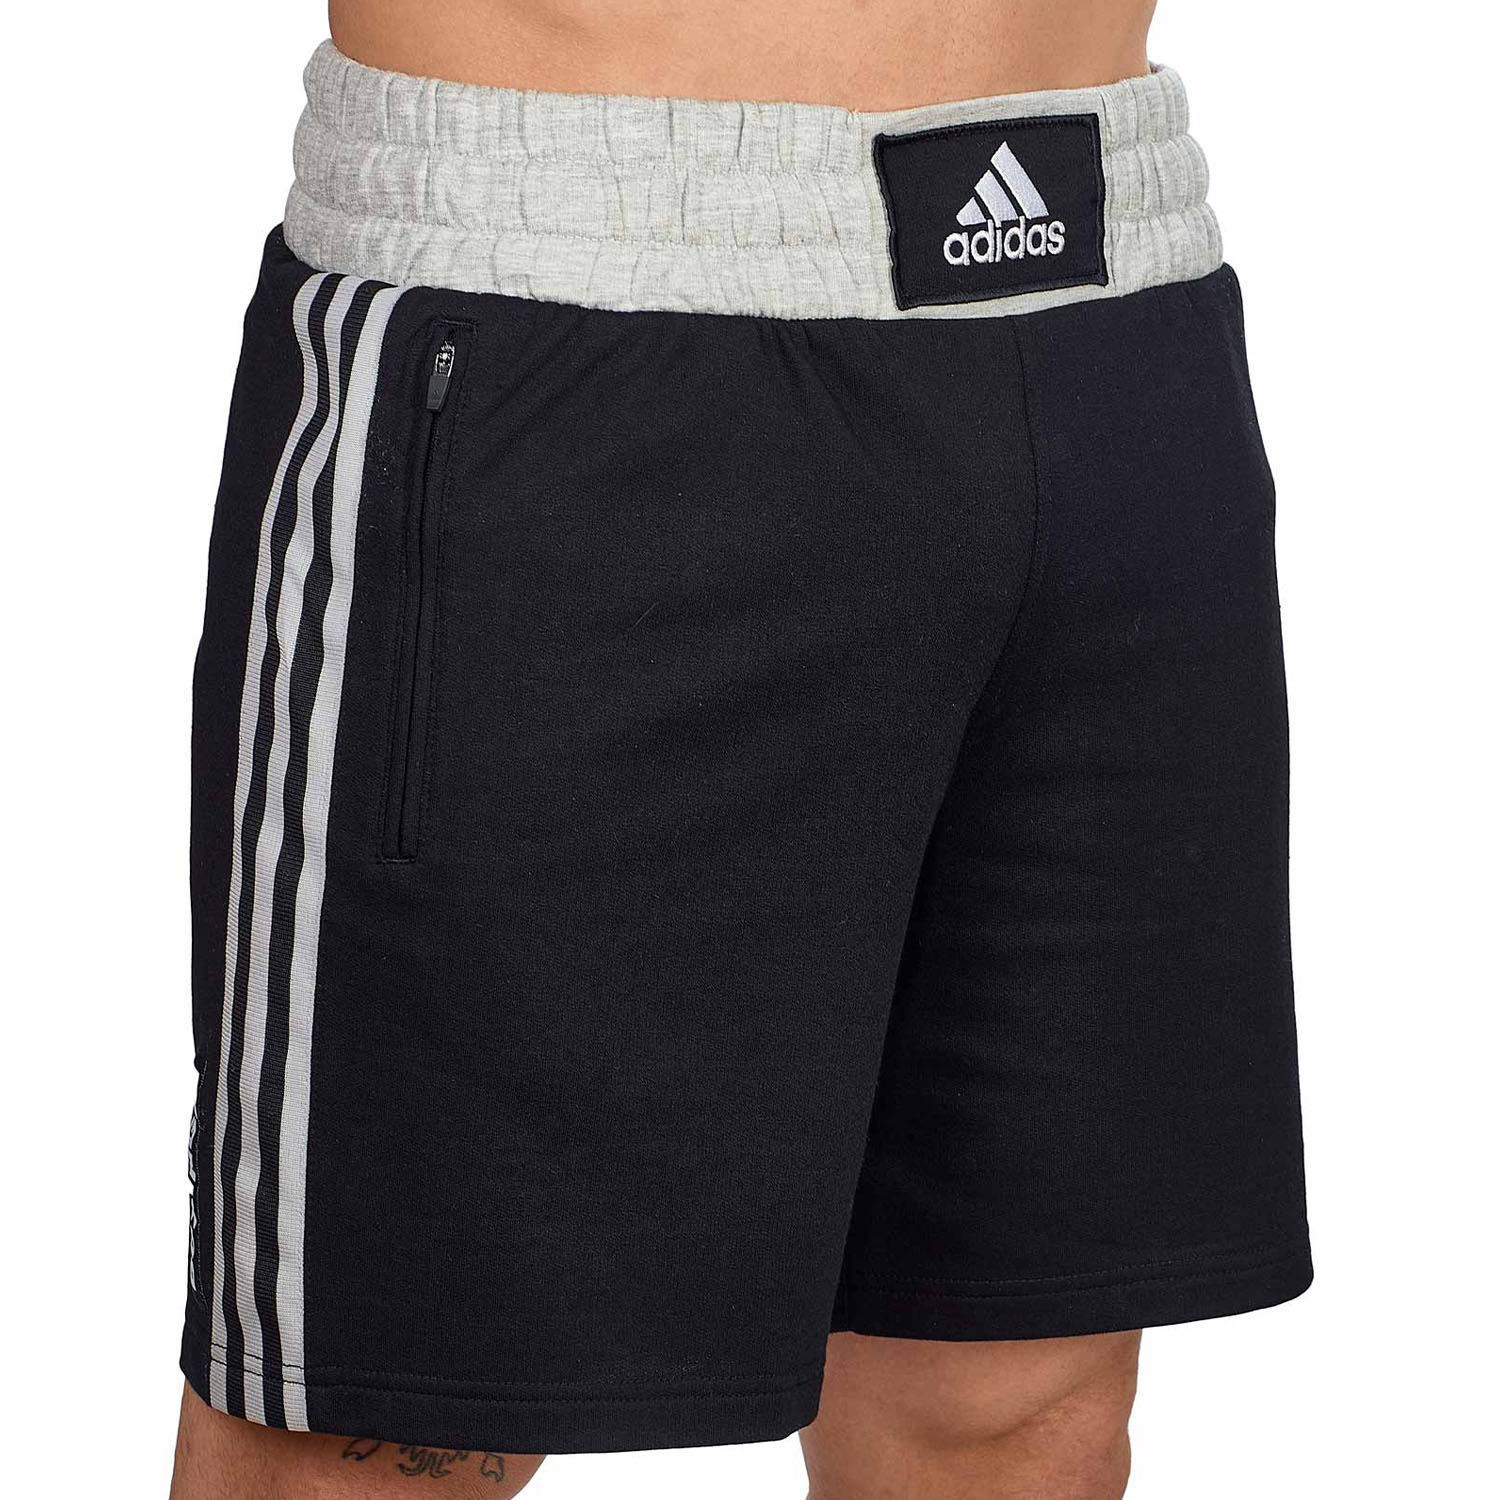 adidas Fitness Shorts, Boxwear Traditional, schwarz-weiß, L